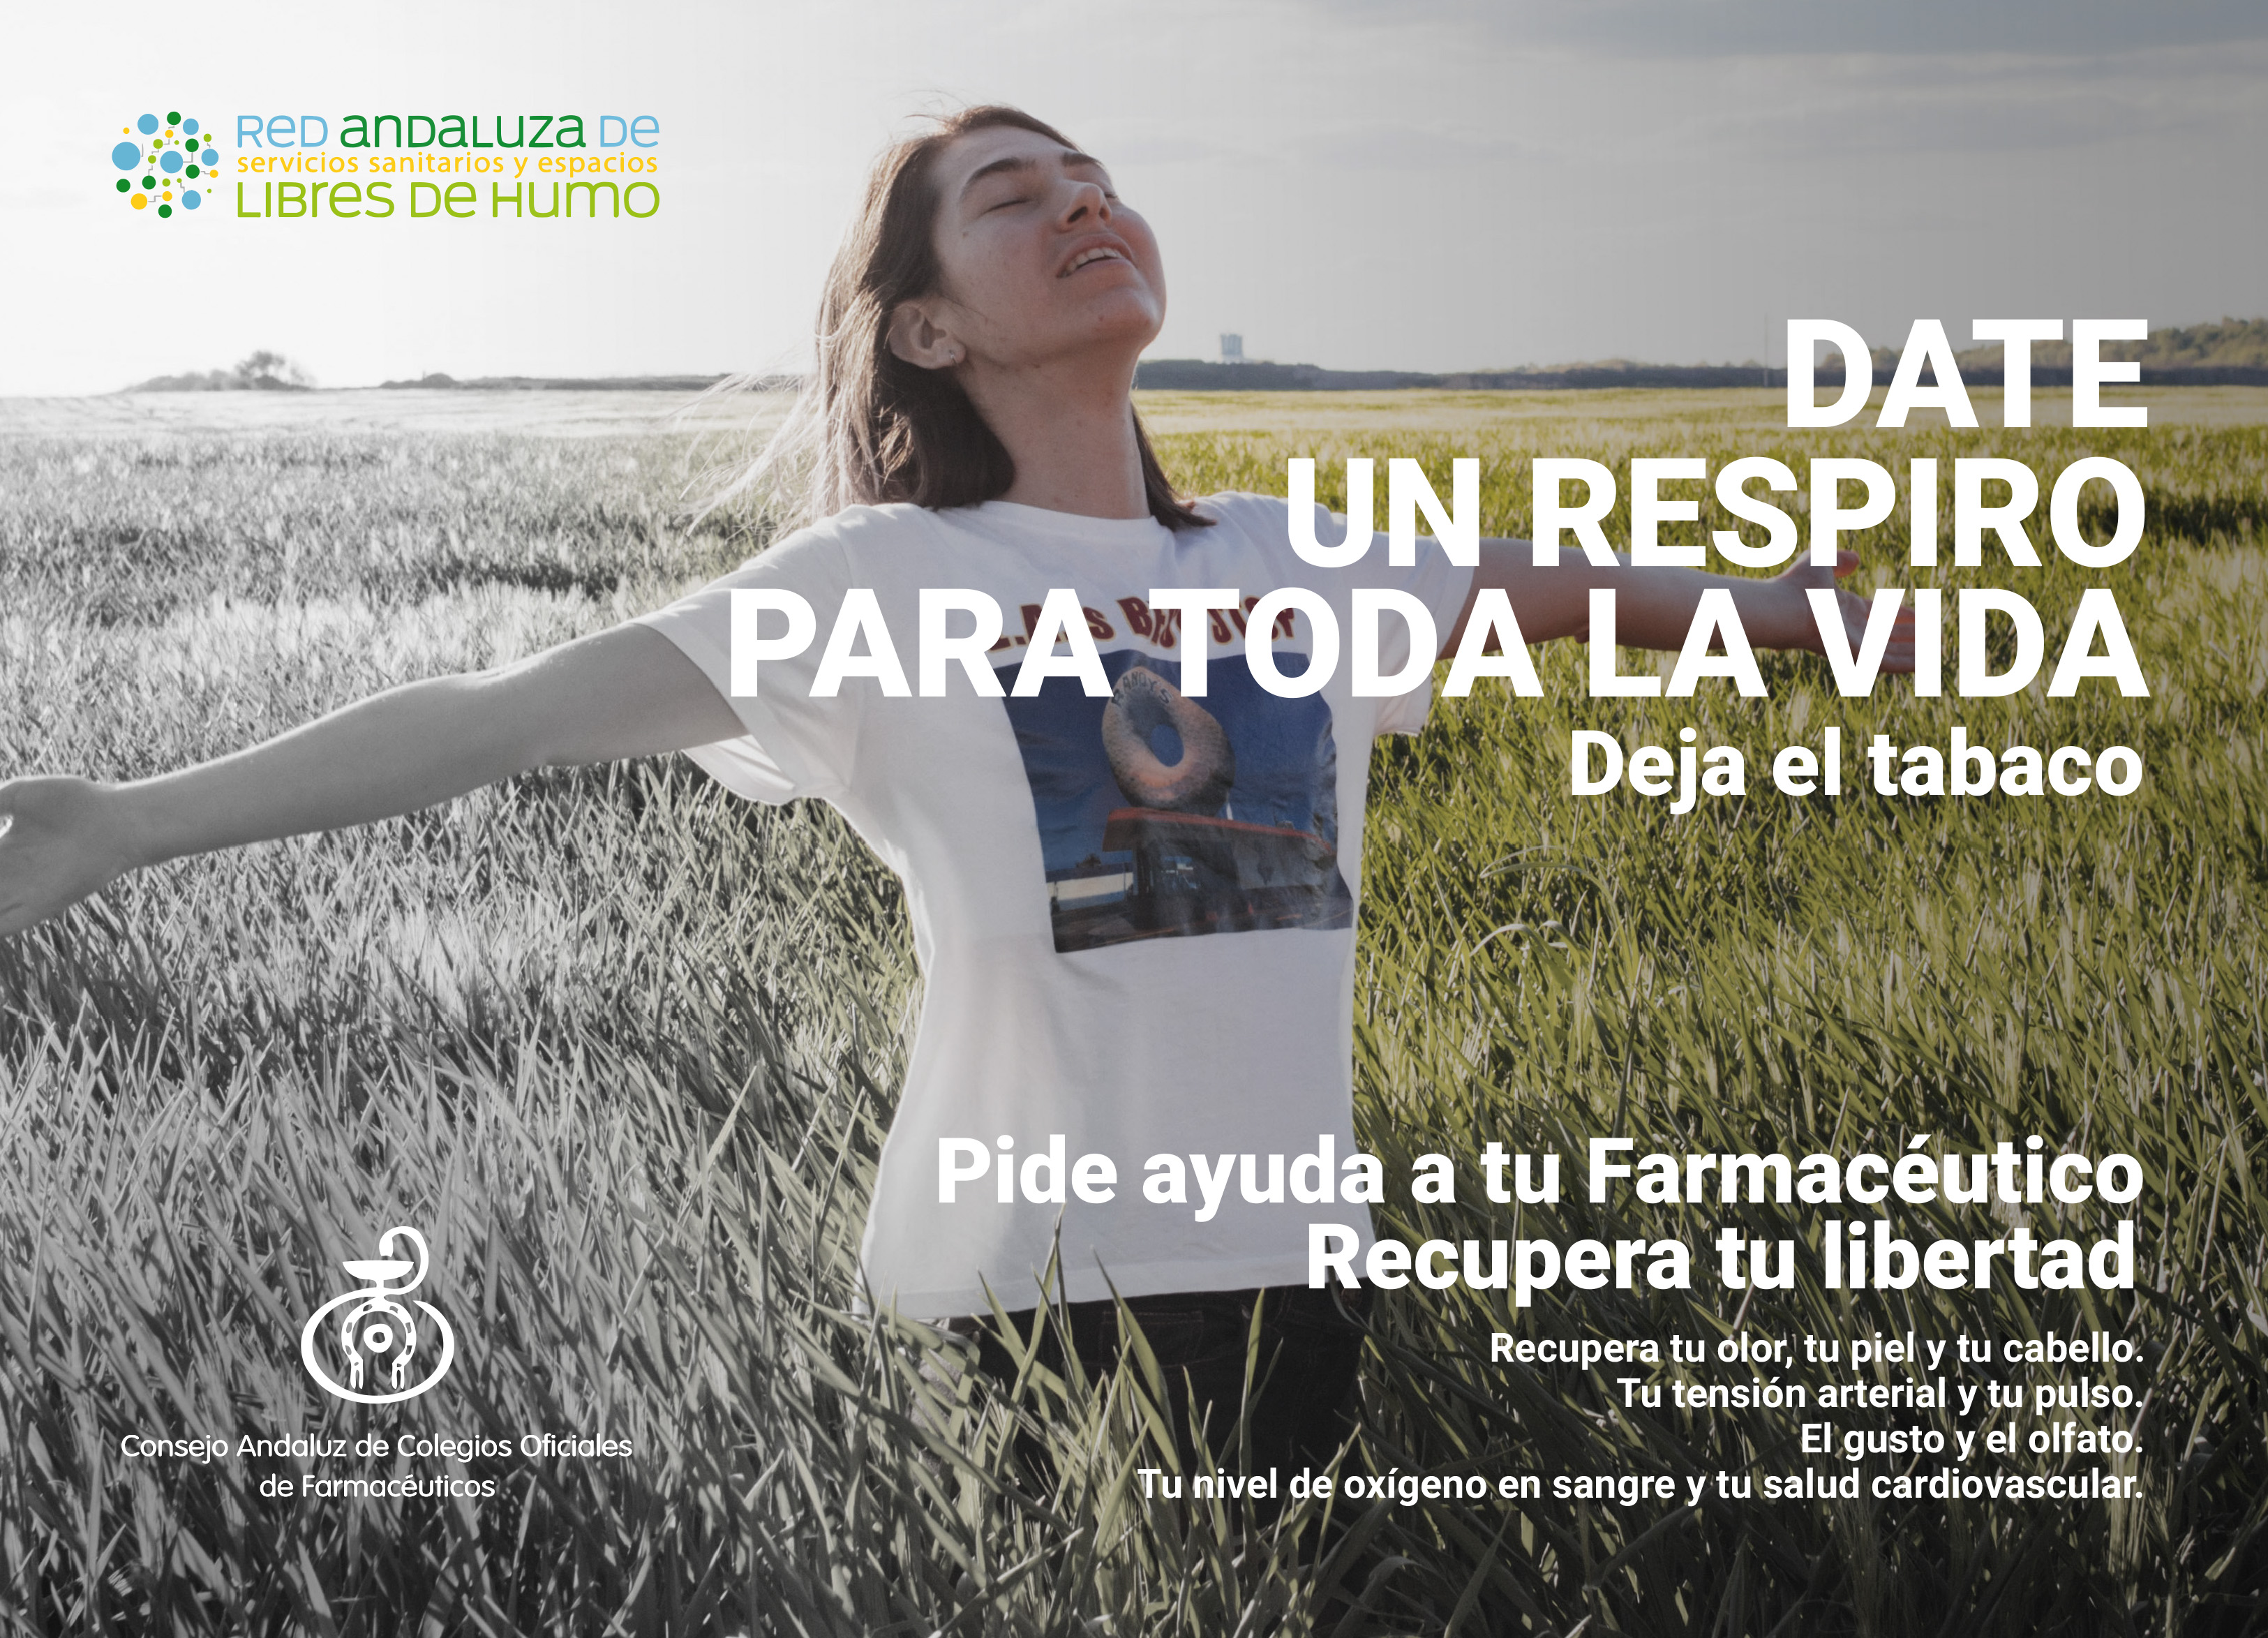 La Farmacia andaluza lanza una campaña para fomentar la cesación tabáquica y ofrecer el apoyo y asesoramiento de los farmacéuticos a las personas que quieran dejar de fumar